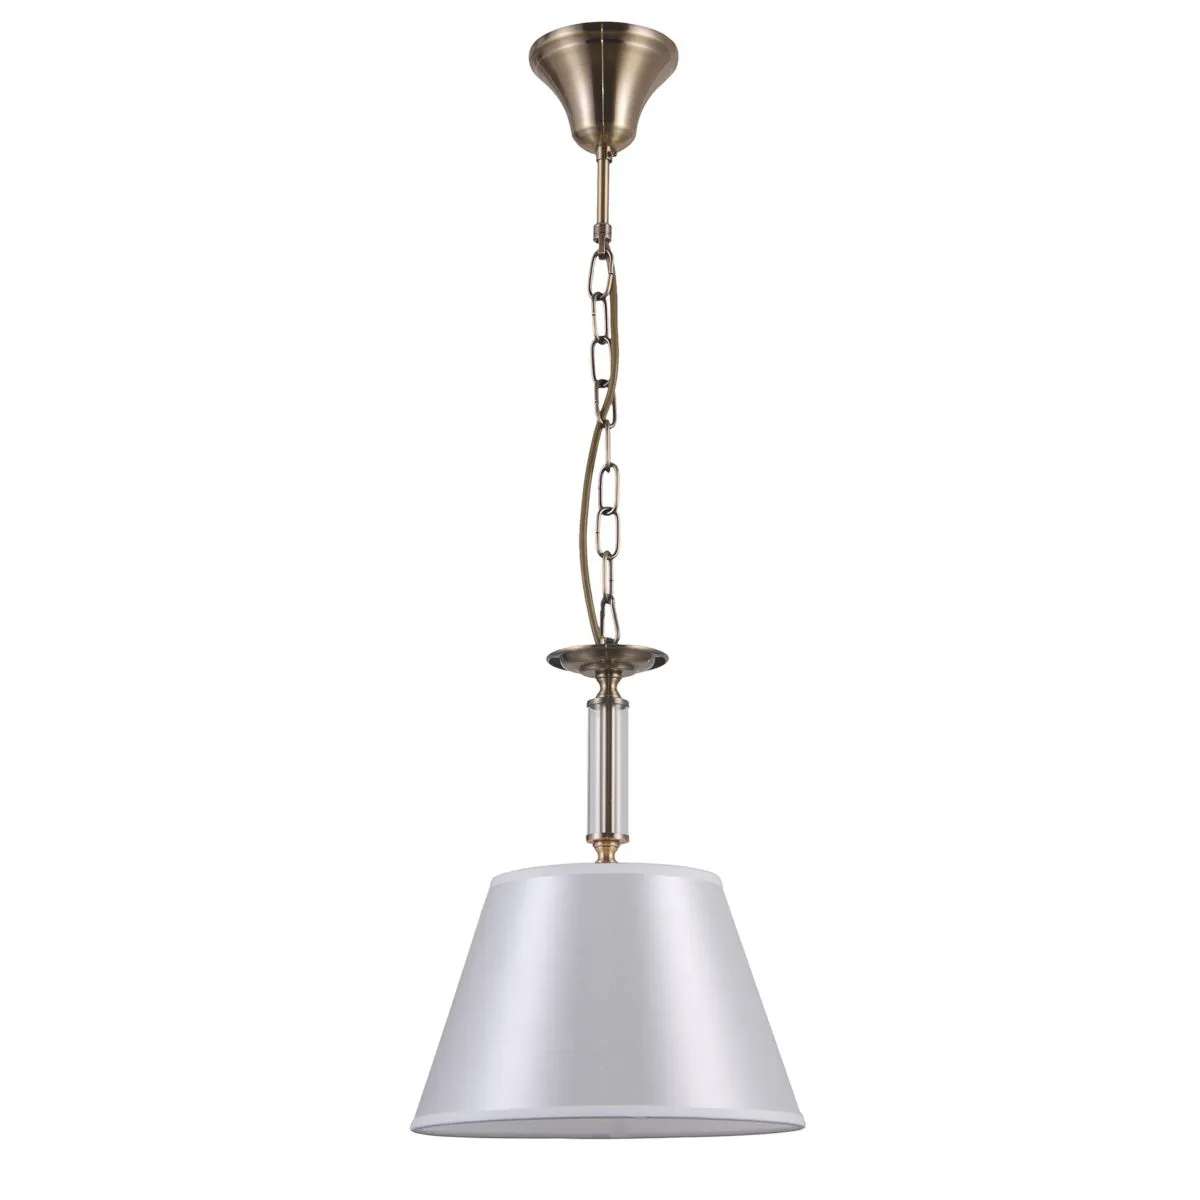 Solana, stylizowana lampa wisząca w kolorze antycznego brązu, PND-28366-1